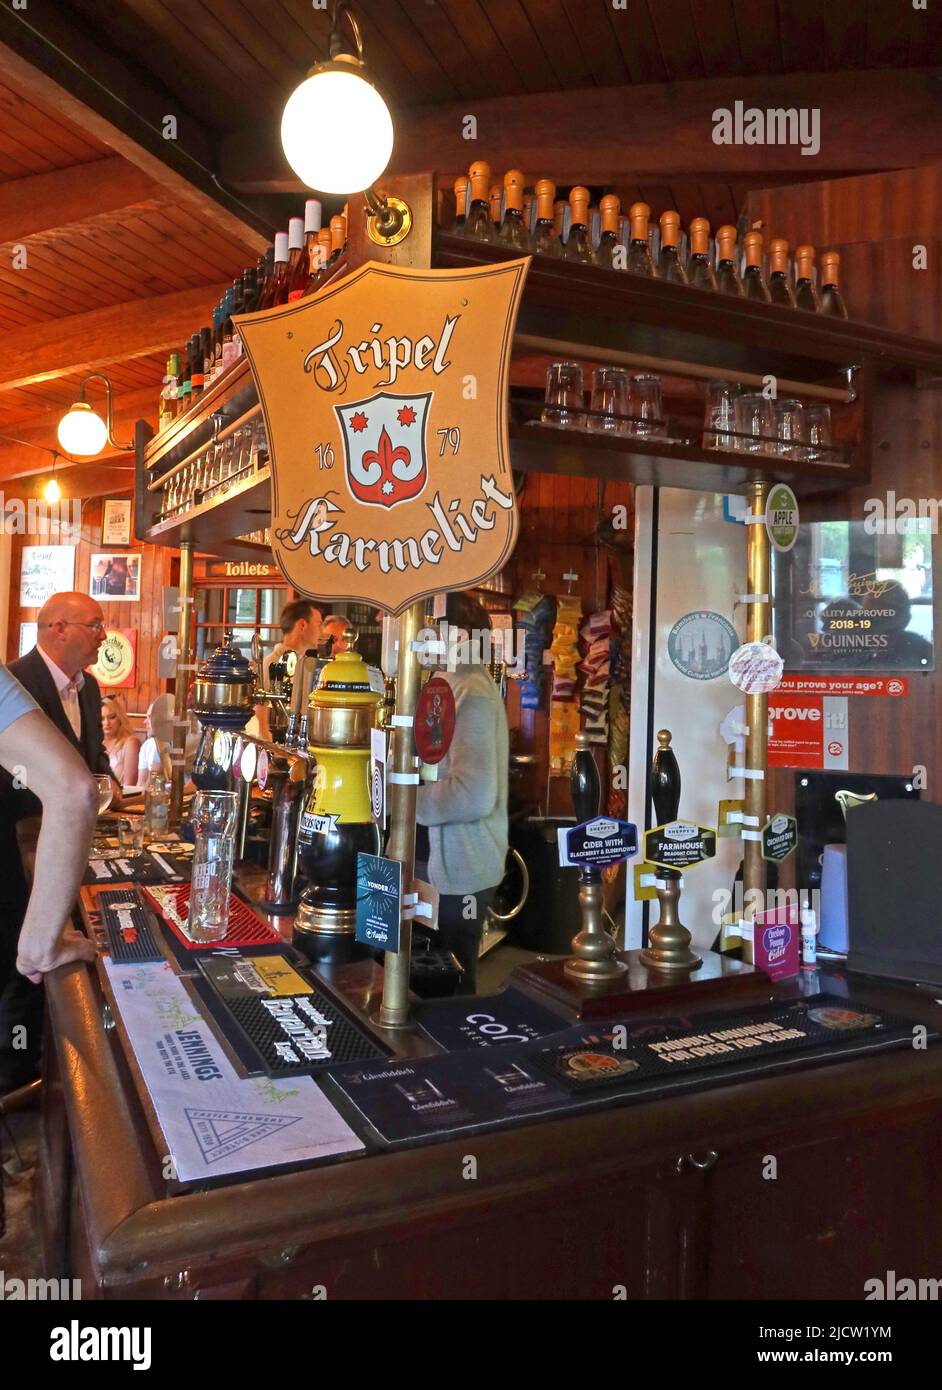 Bar du Liverpool Ship and Mitre Real ALE Pub, espace de service au bar sur le thème maritime et logo belge de la bière Tripel Karmeliet, L2 Banque D'Images